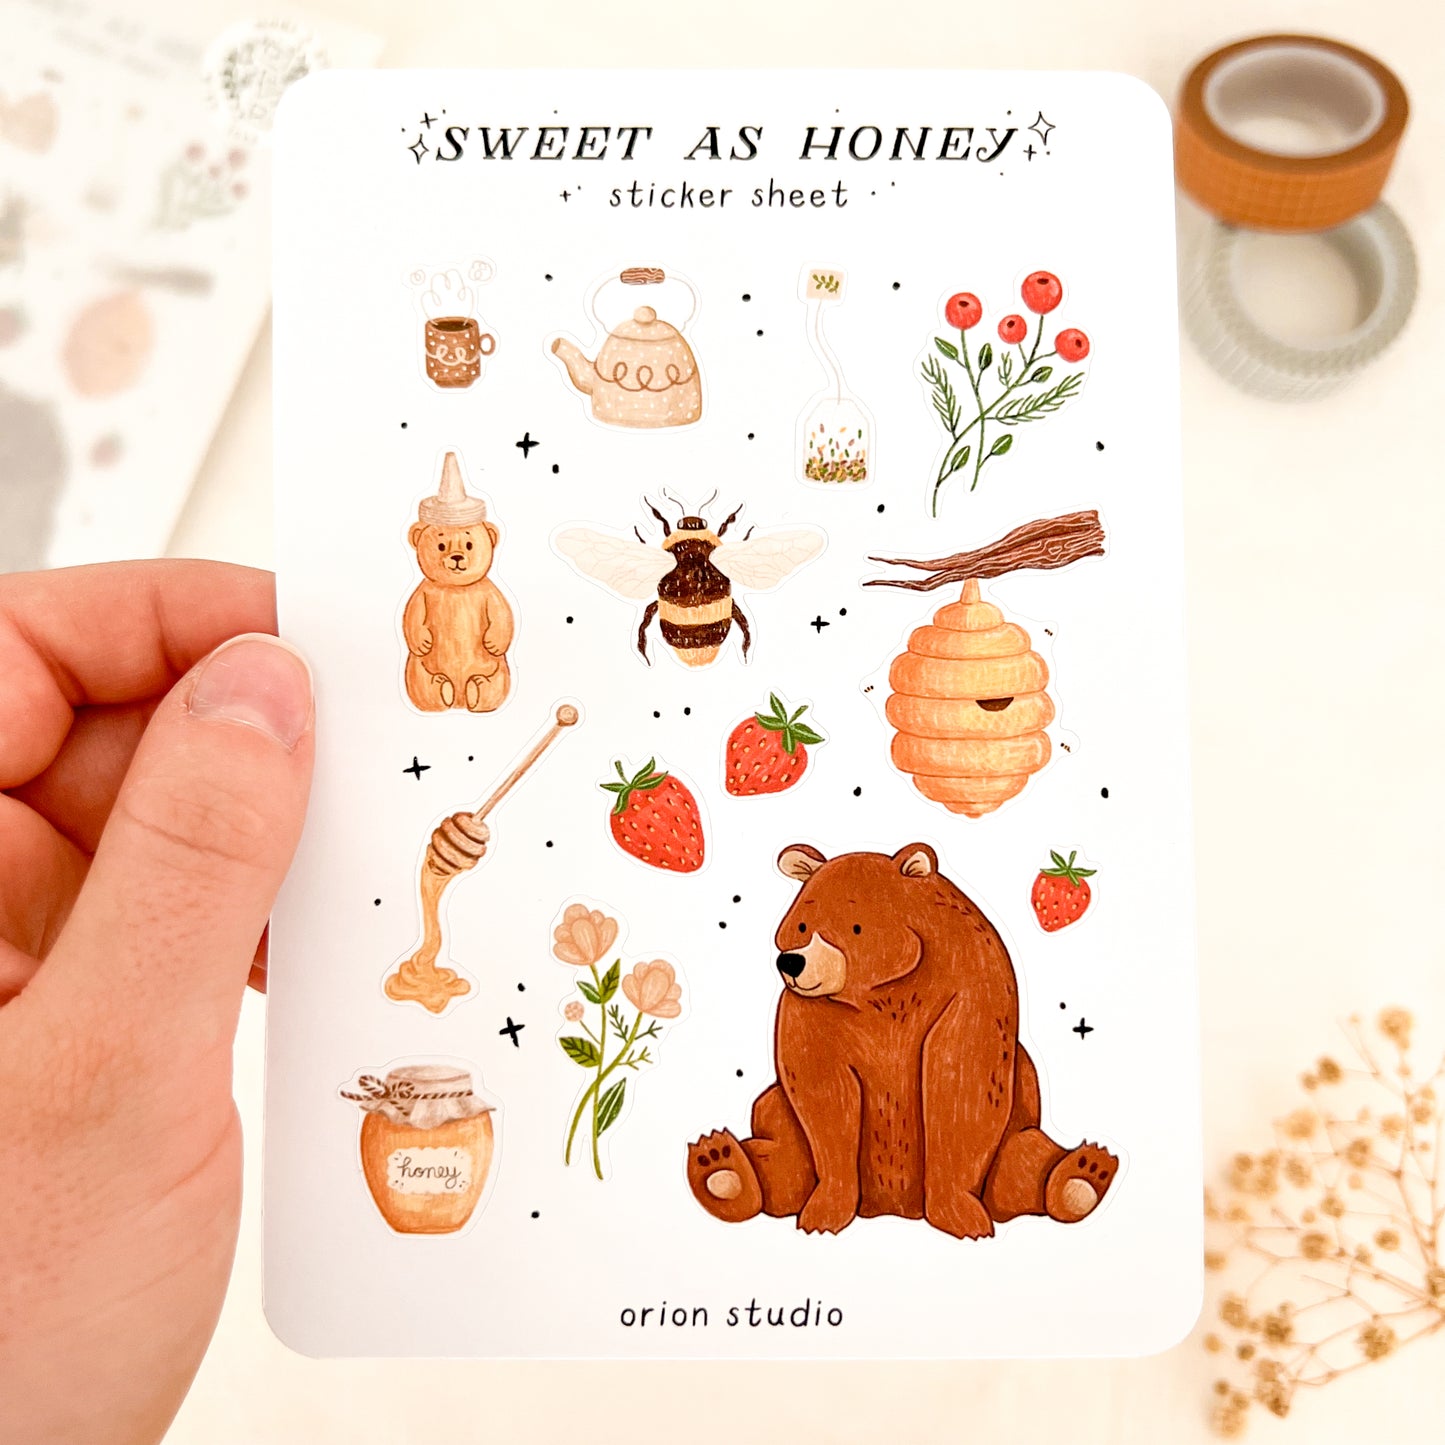 'SWEET AS HONEY' sticker sheet